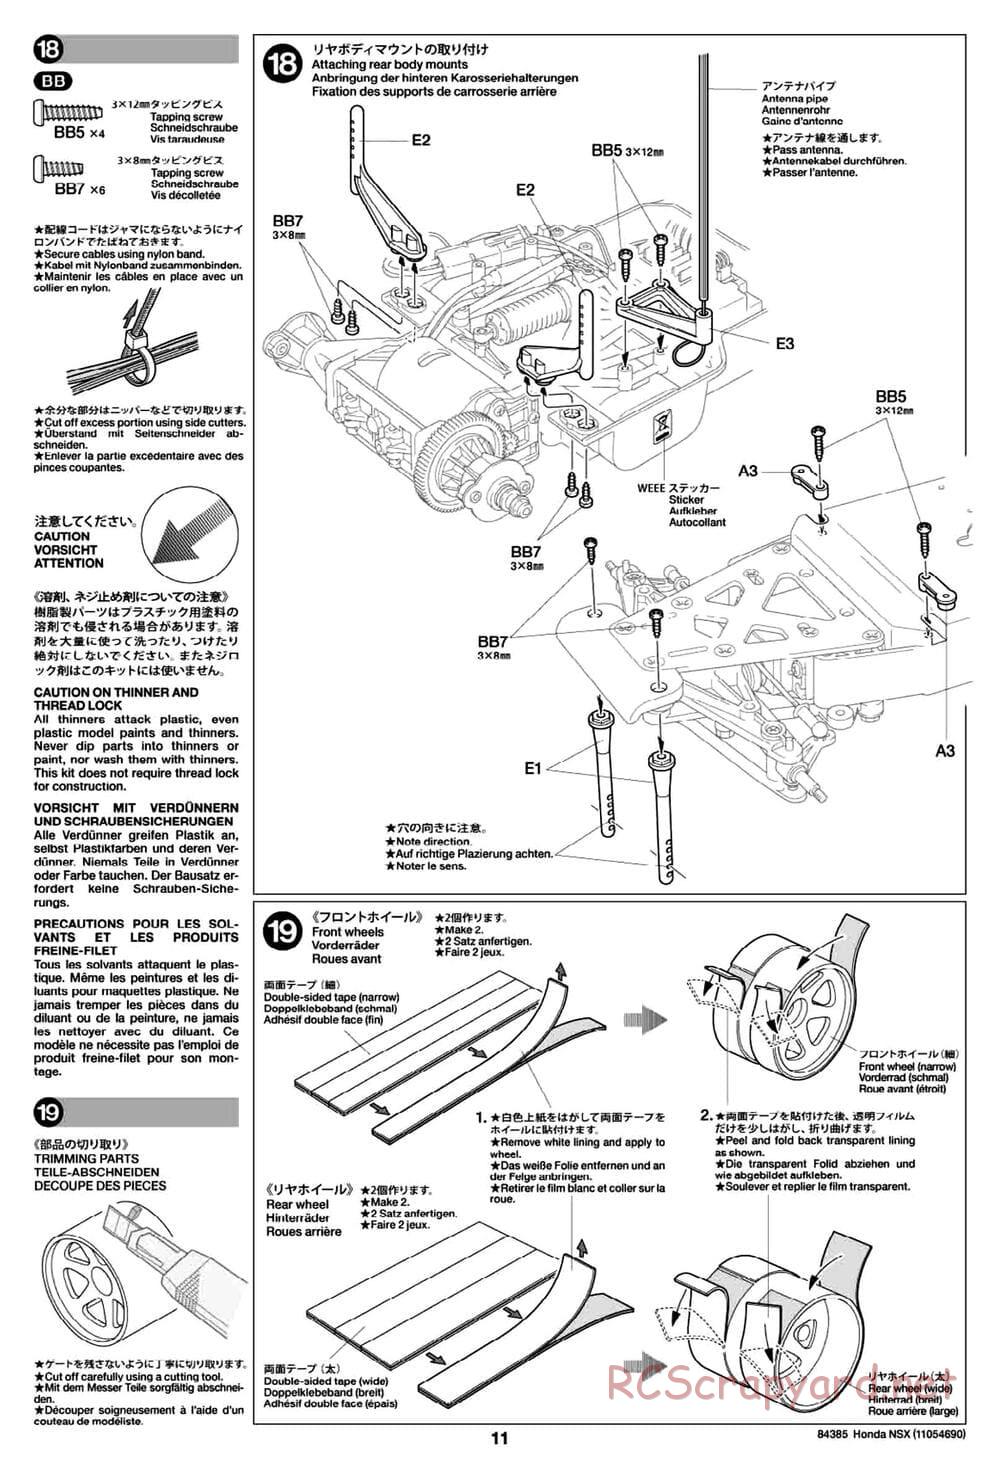 Tamiya - Honda NSX - Group-C Chassis - Manual - Page 11